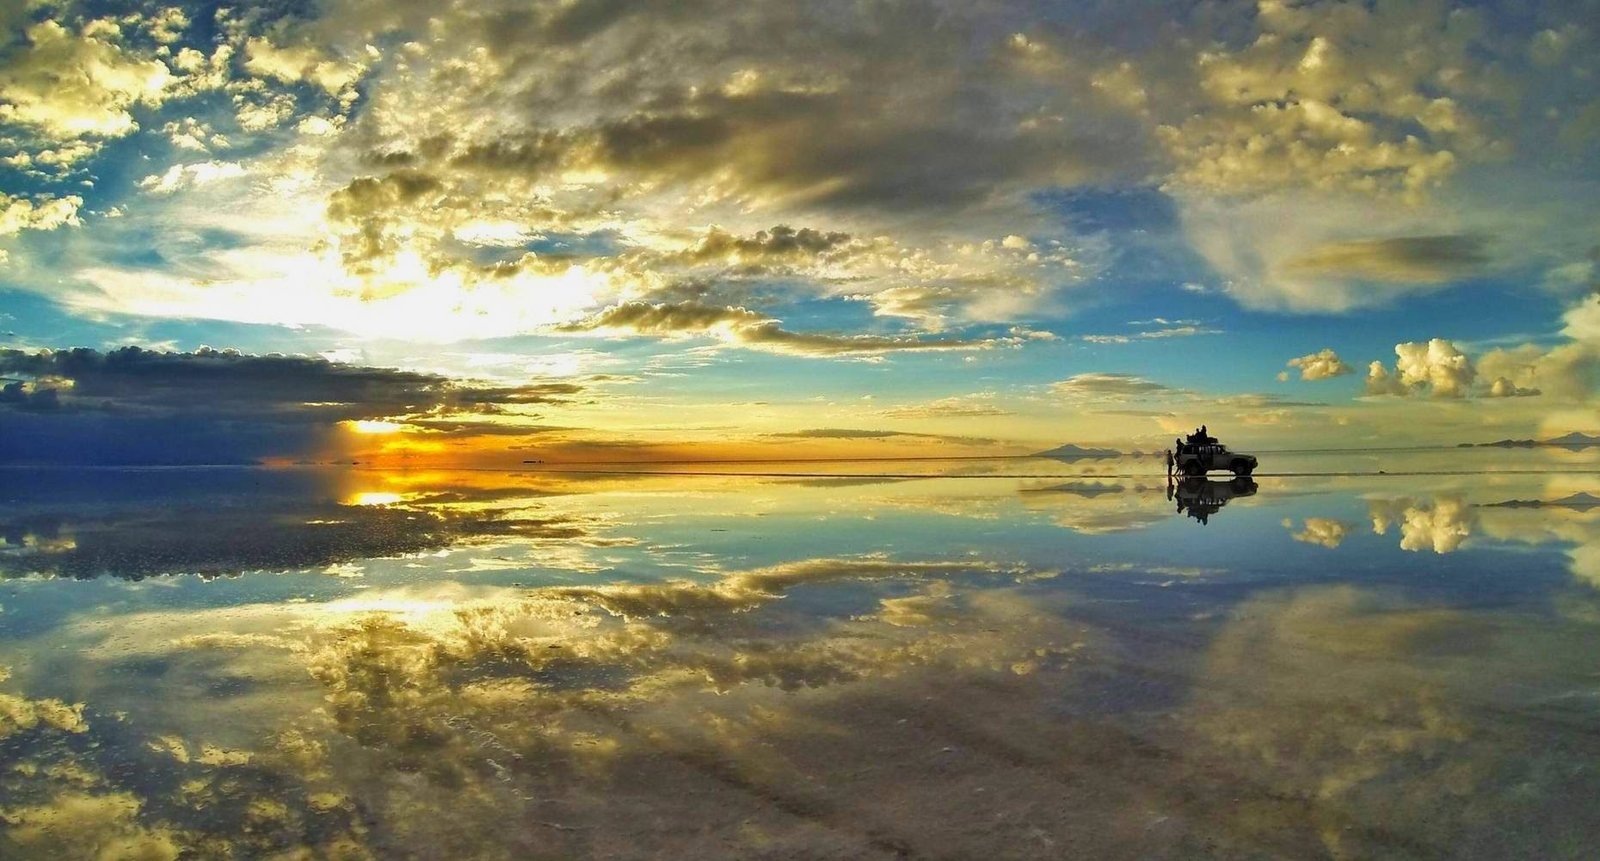 Salar-de-Uyuni-Reflection-At-Sunset.jpg